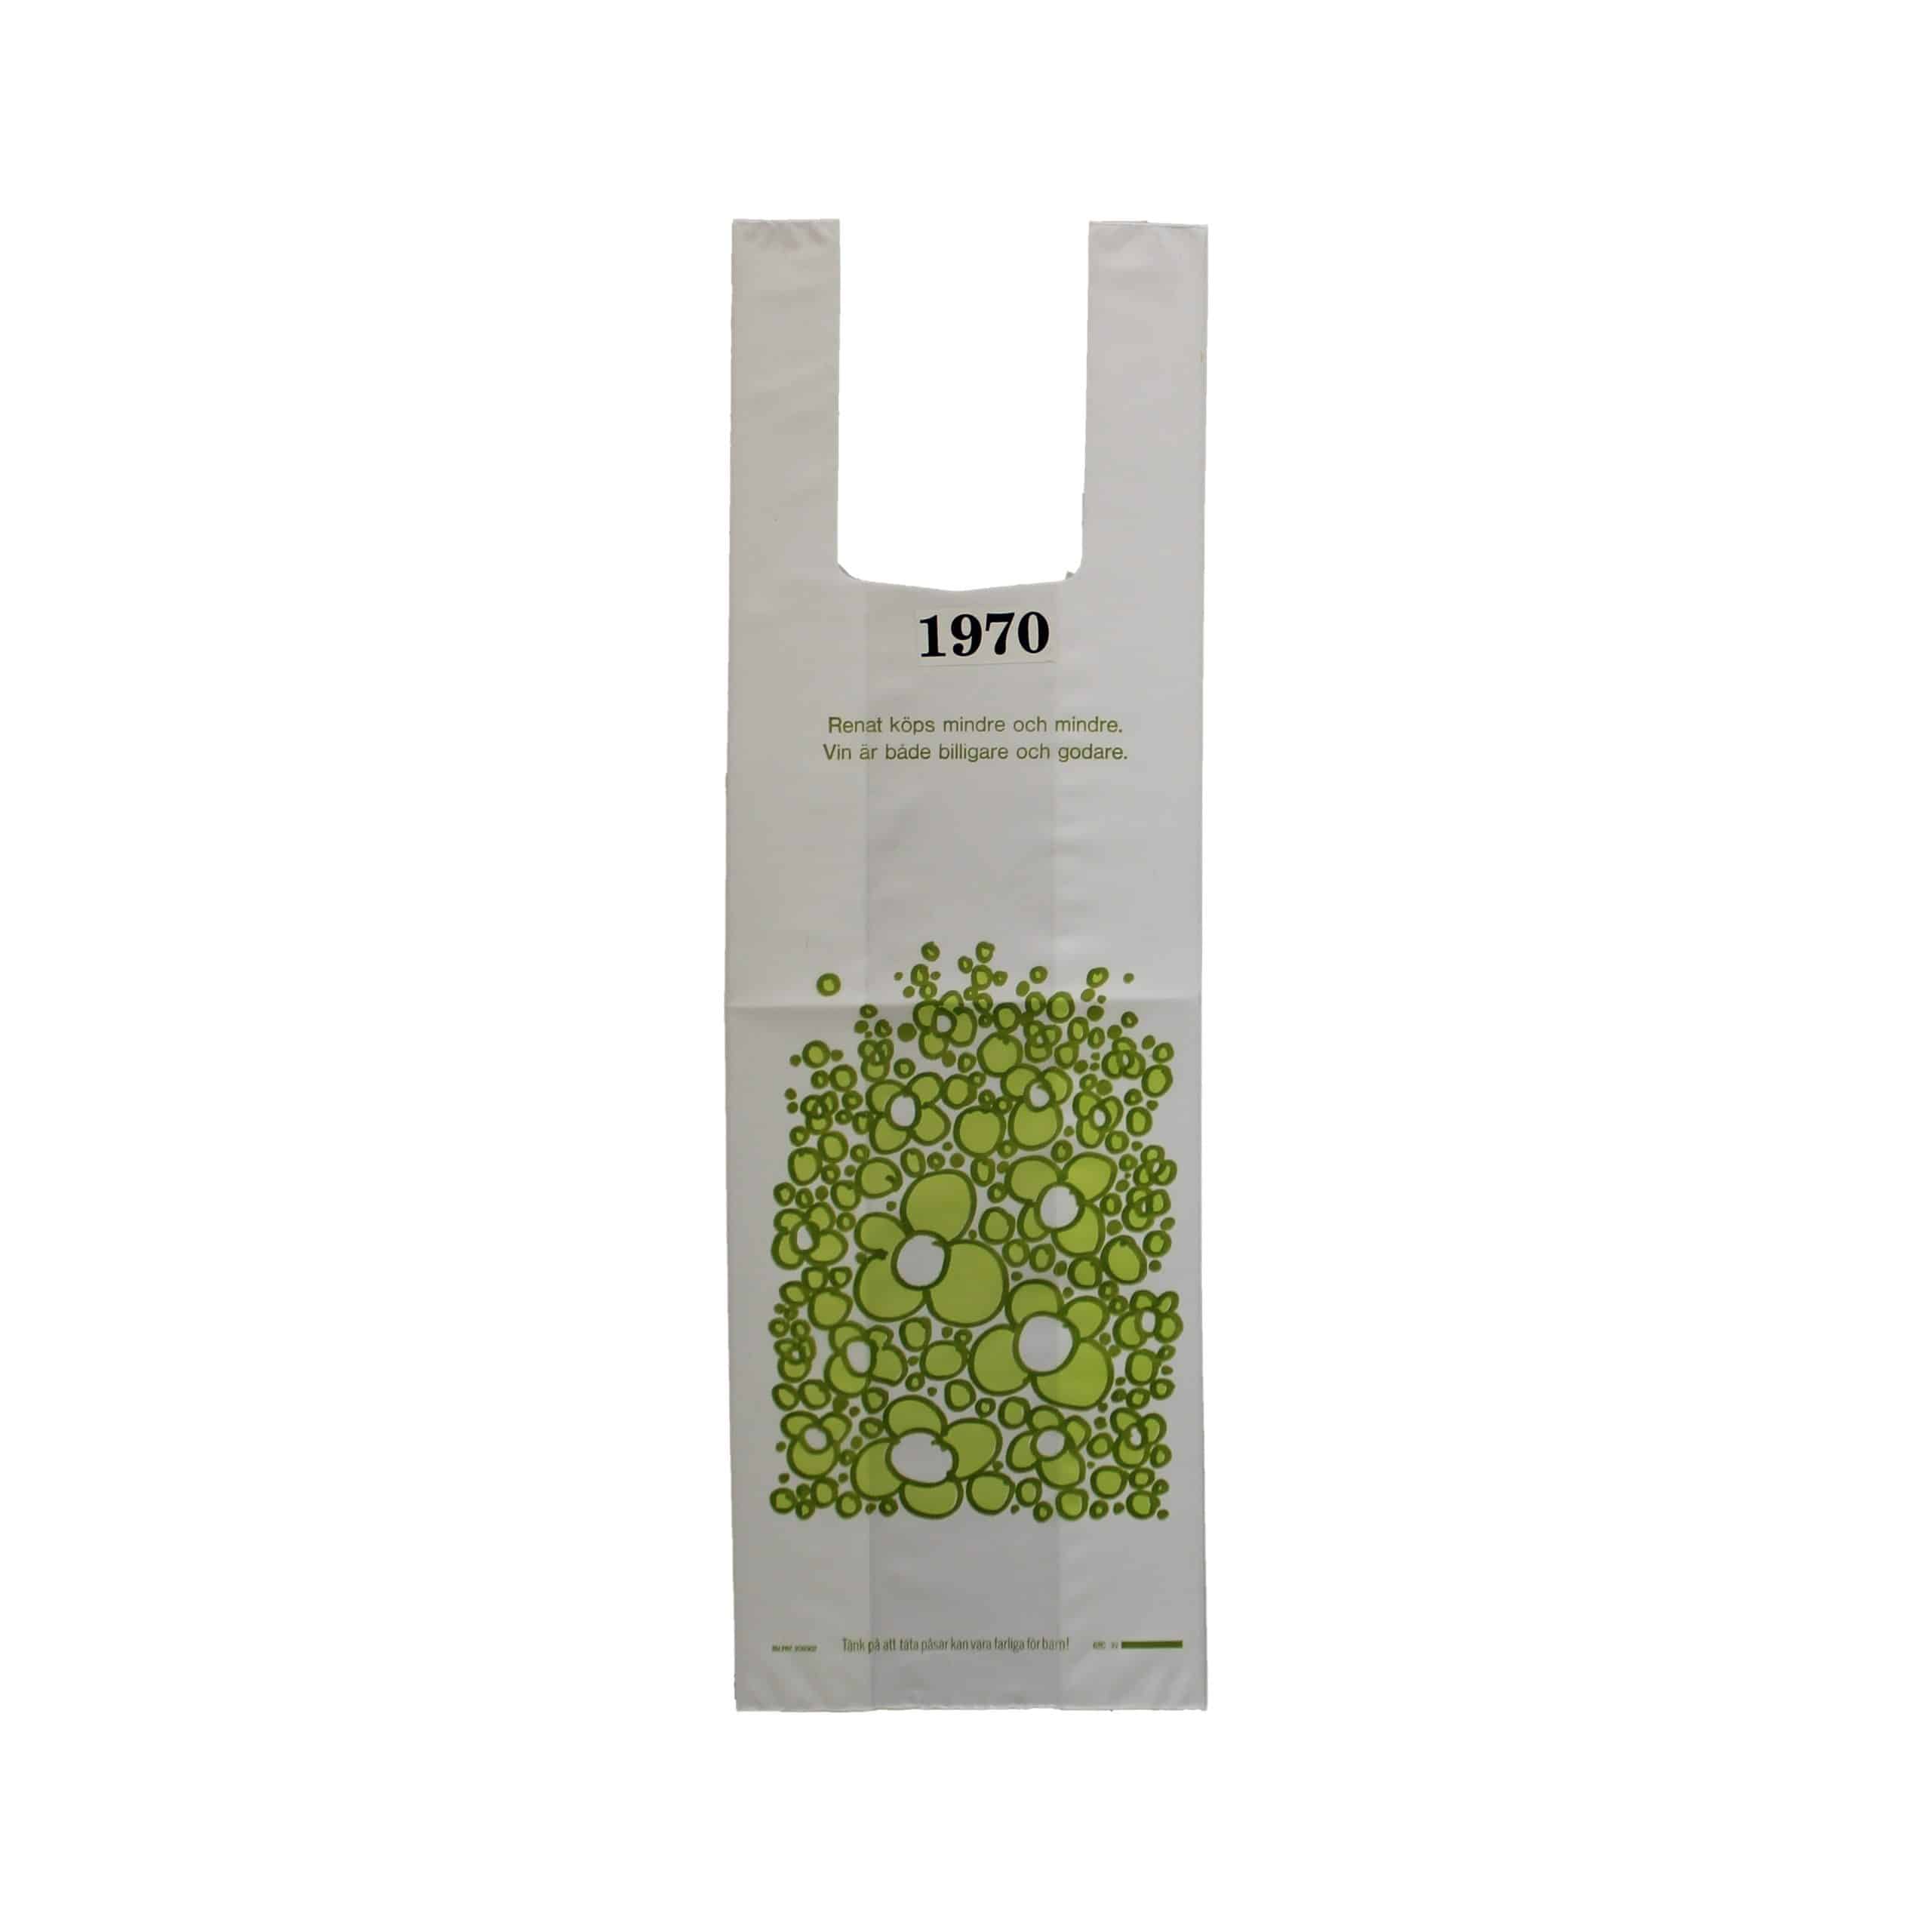 Vit plastpåse med grönt tryckVin hellre än brännvin.Tidpunkt: 1970; Deponent: Systembolaget / Systembolaget AB; Motiv-ID: SYS010007